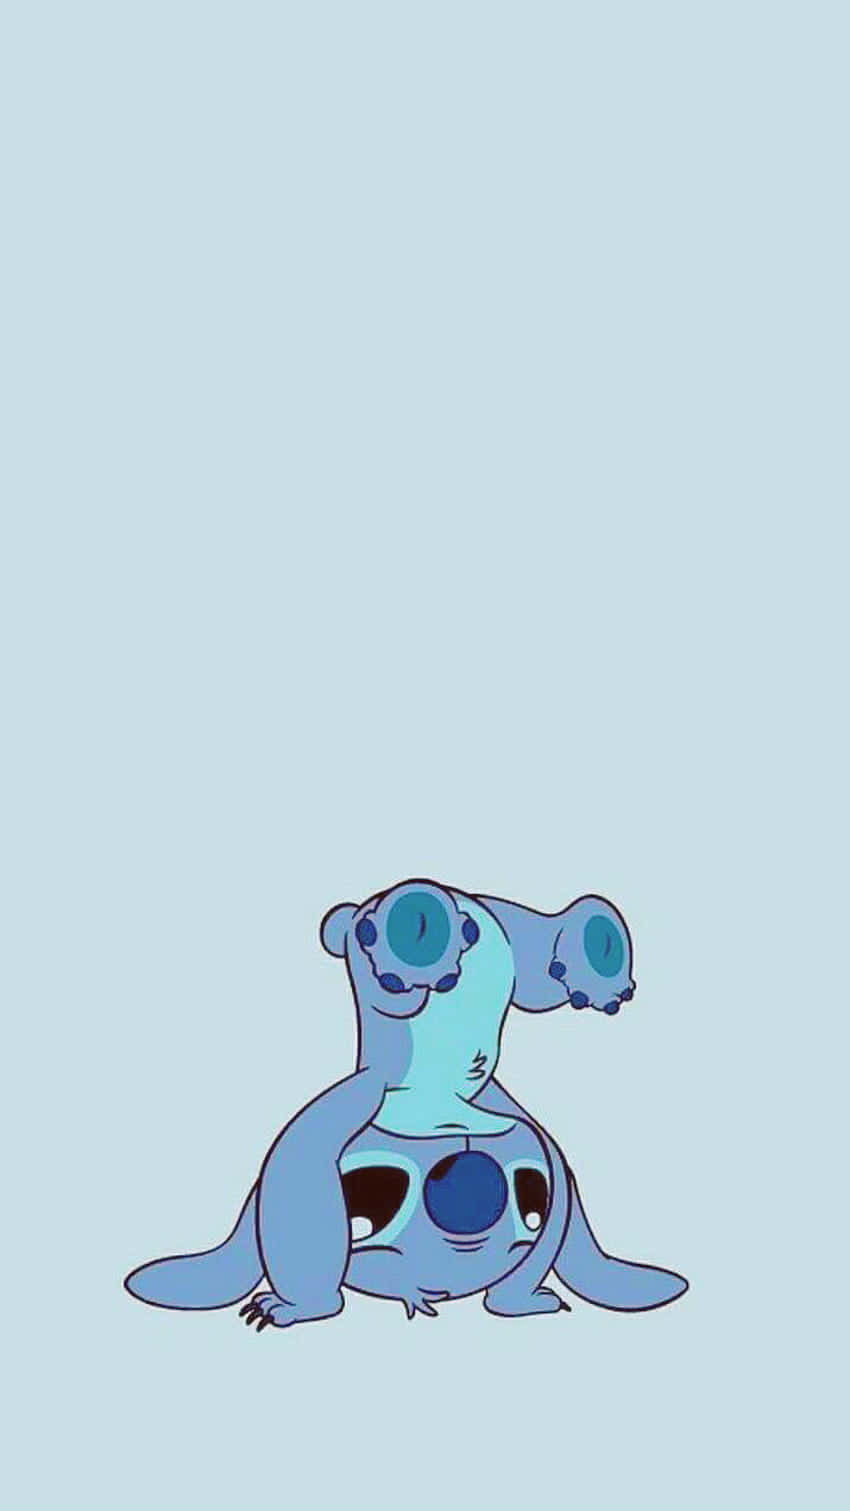 For a little blue alien, Stitch sure is adorable!